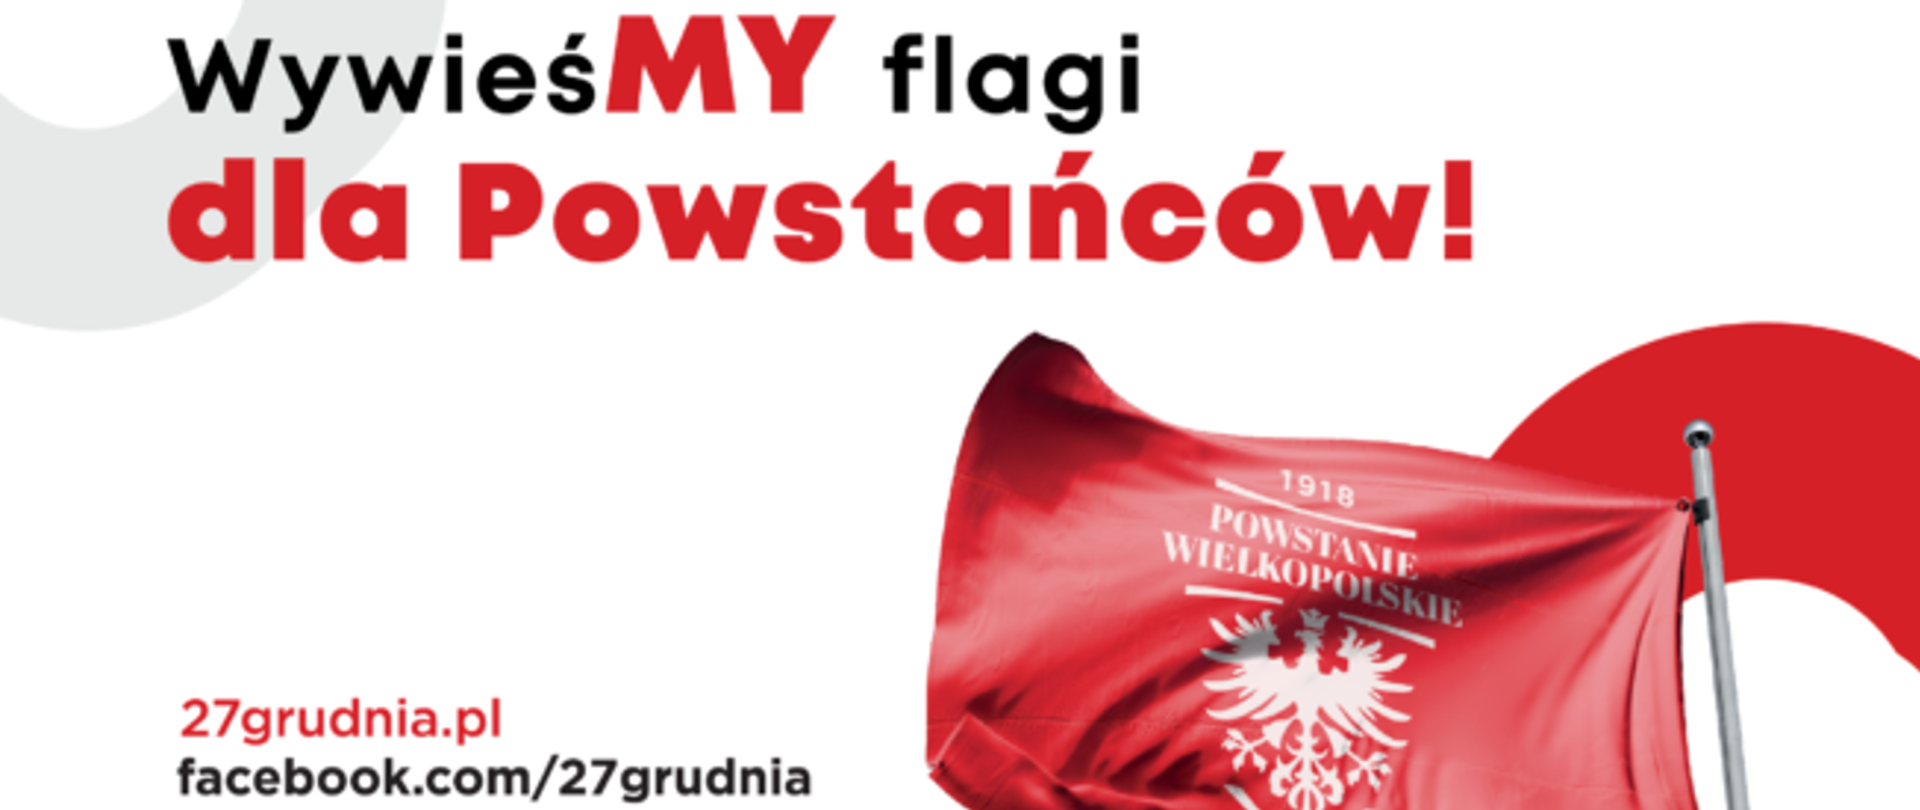 WywieśMY flagi dla Powstańców! - plakat programu